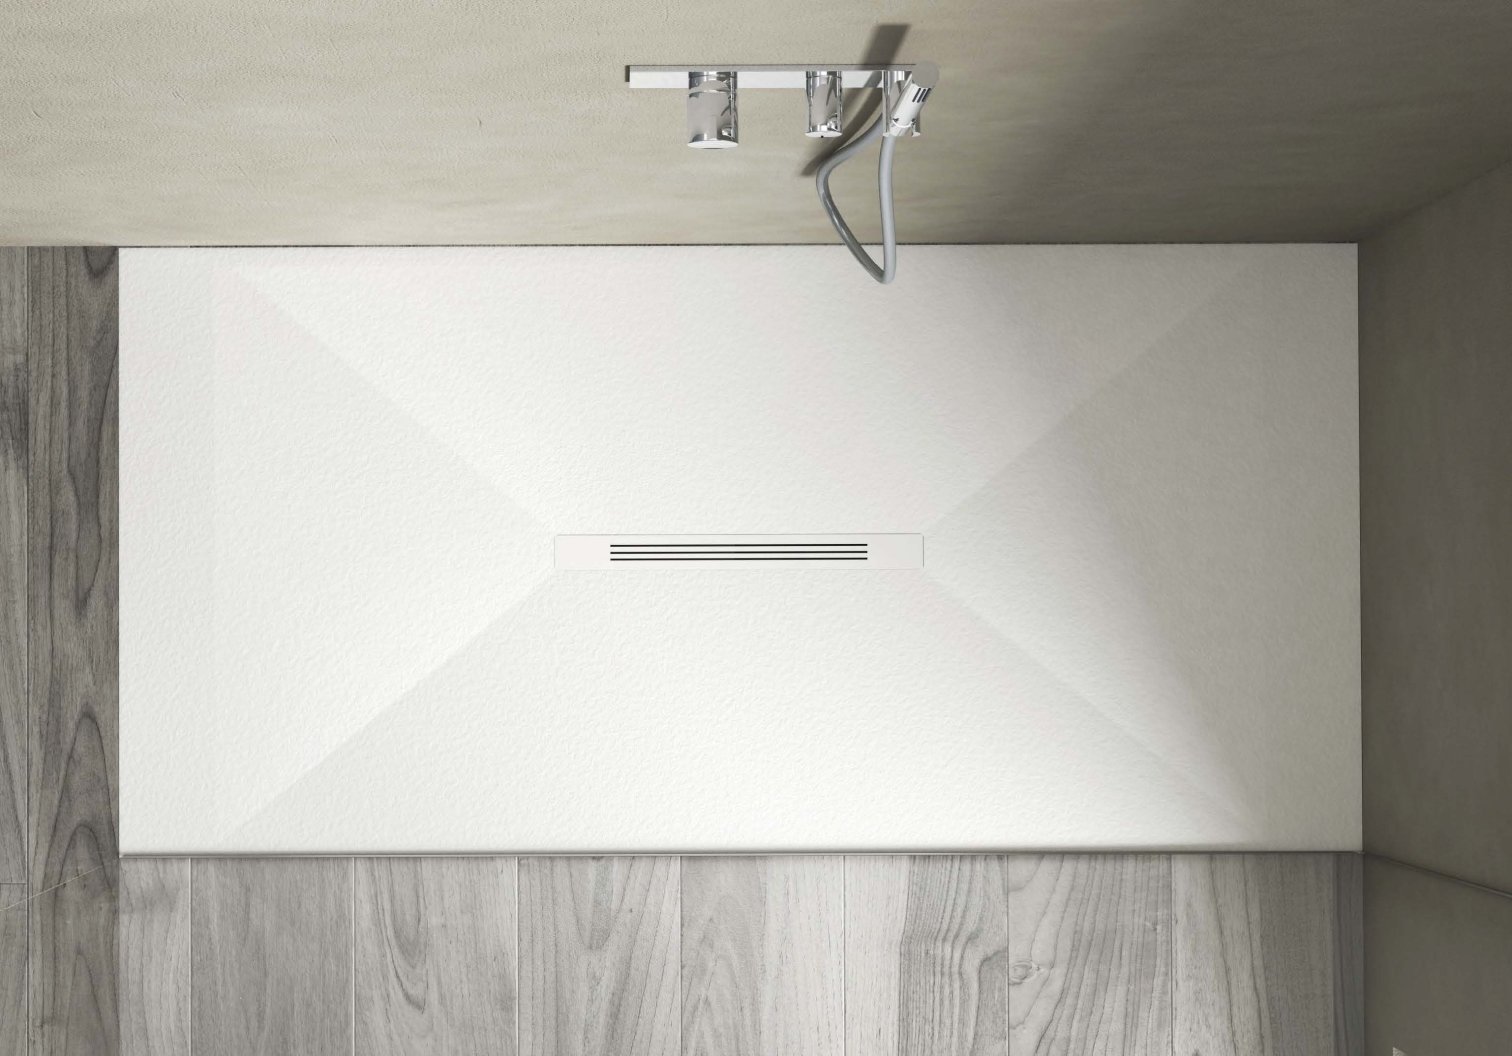 Disenia, Krus Shower tray 80x120 cm WHITE